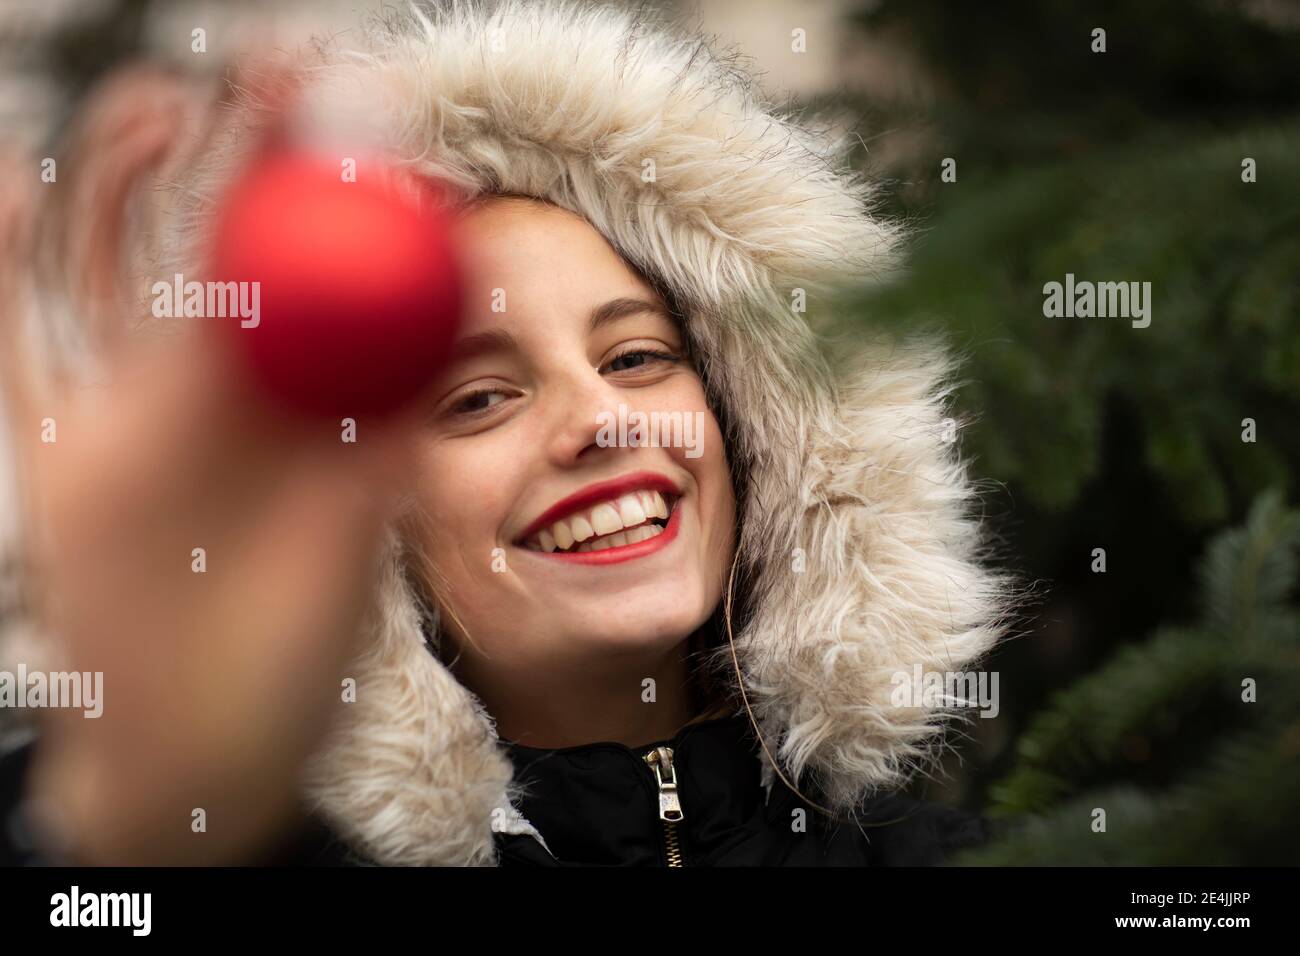 Fröhliche Frau in warmer Kleidung hält Weihnachtsschmuck bei Kälte Temperatur Stockfoto